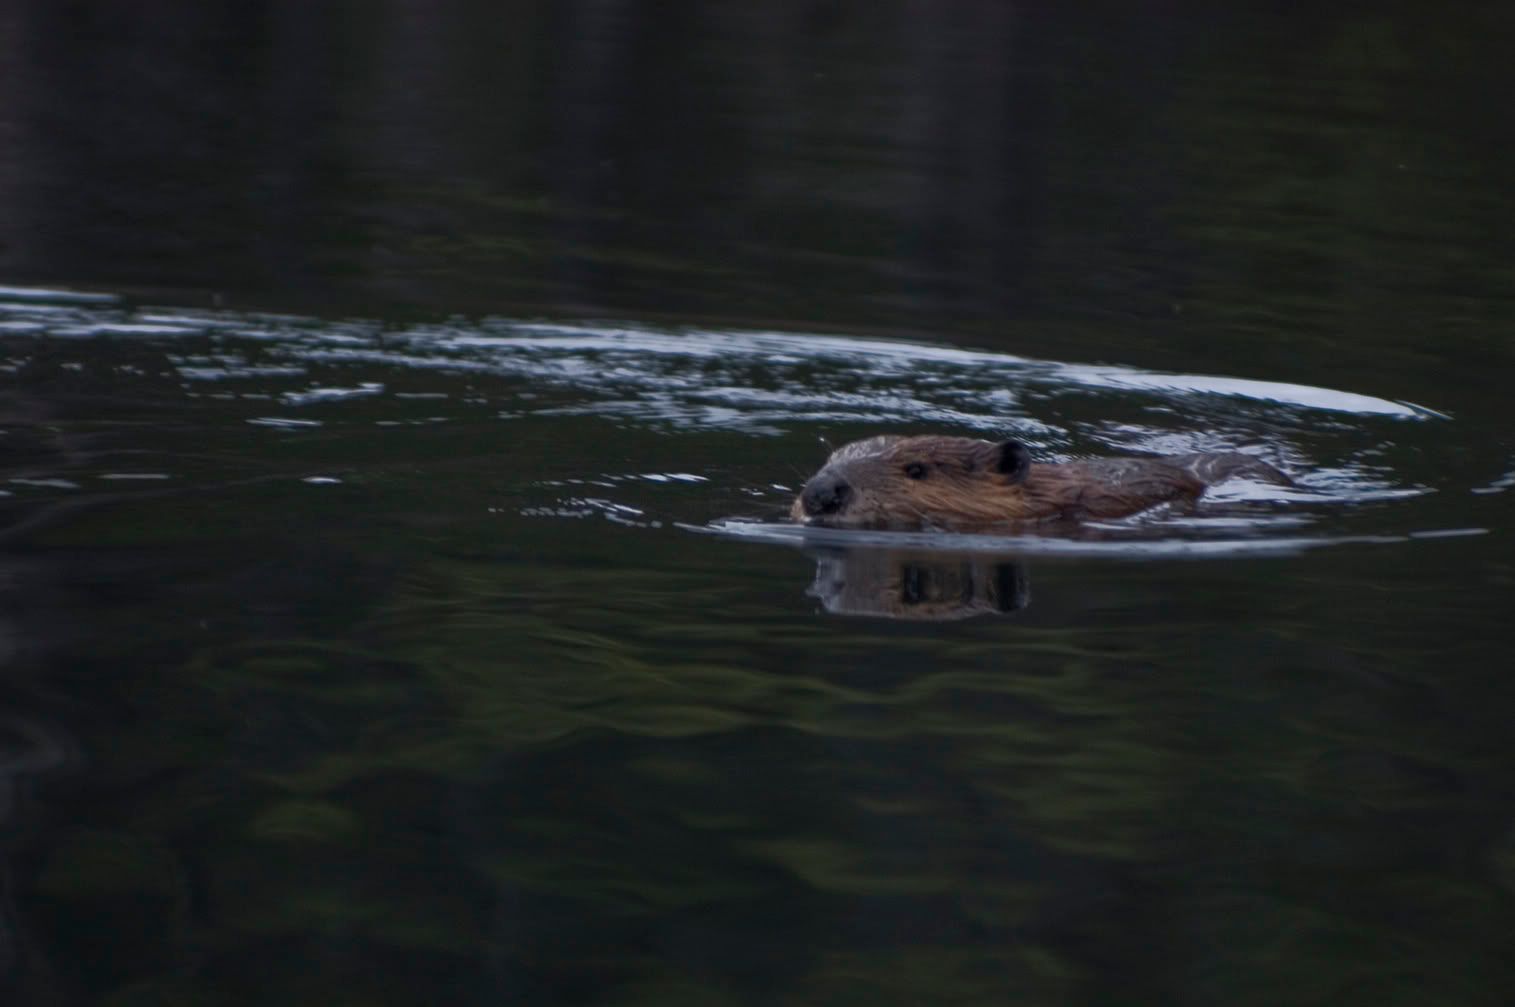 beaverswimming.jpg